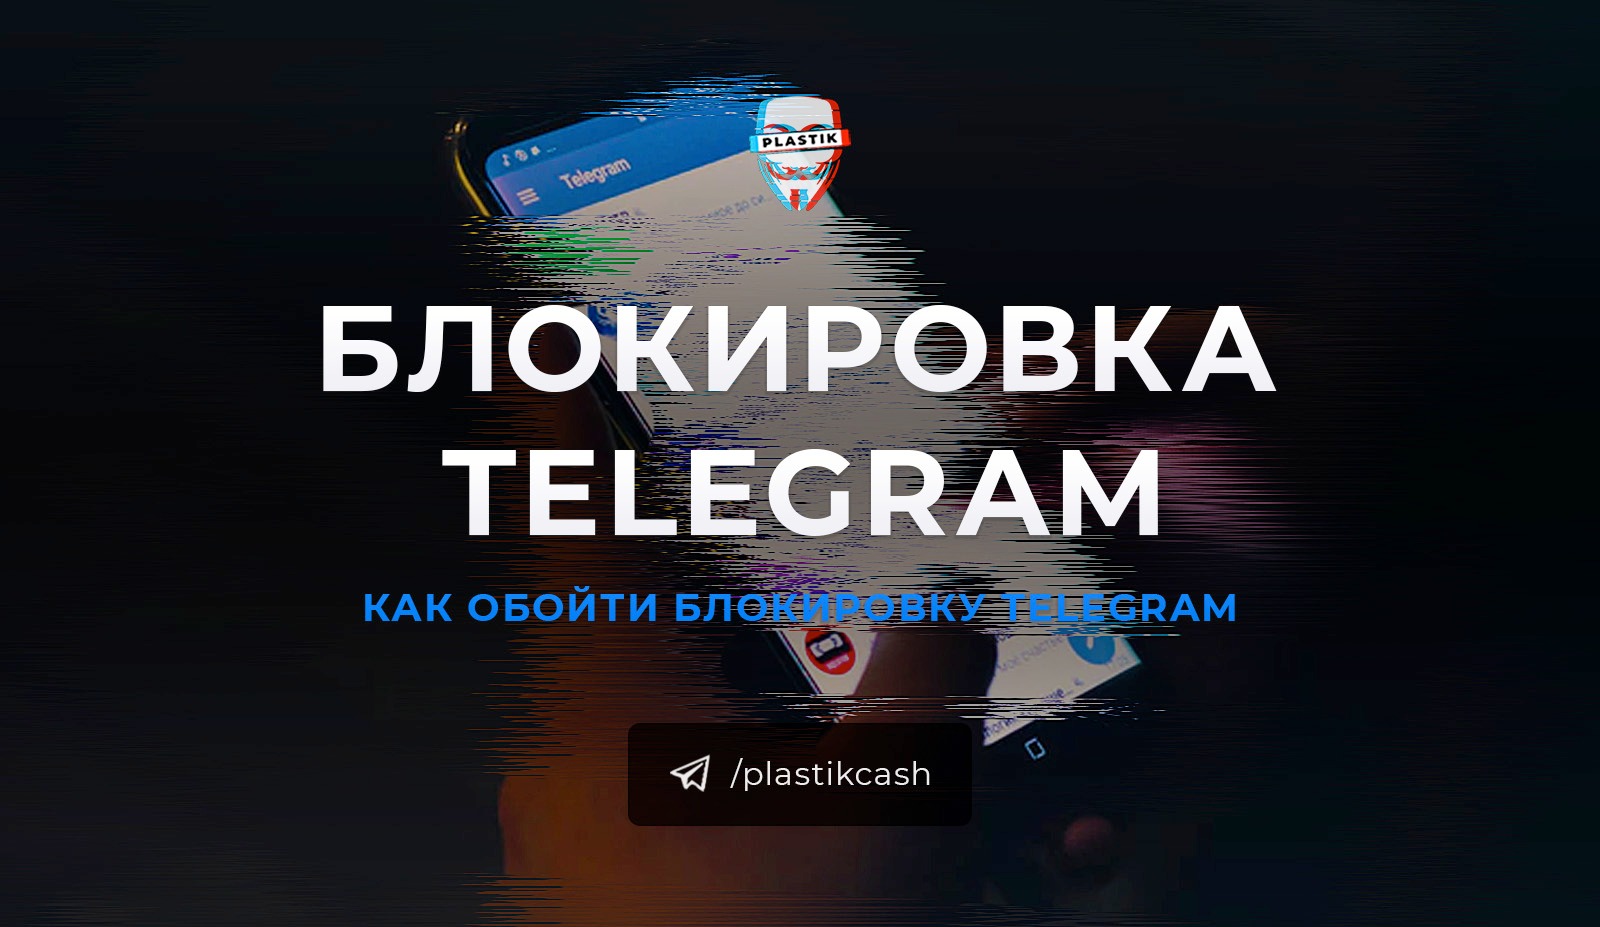 Как снять блокировку телеграмм на андроид фото 100